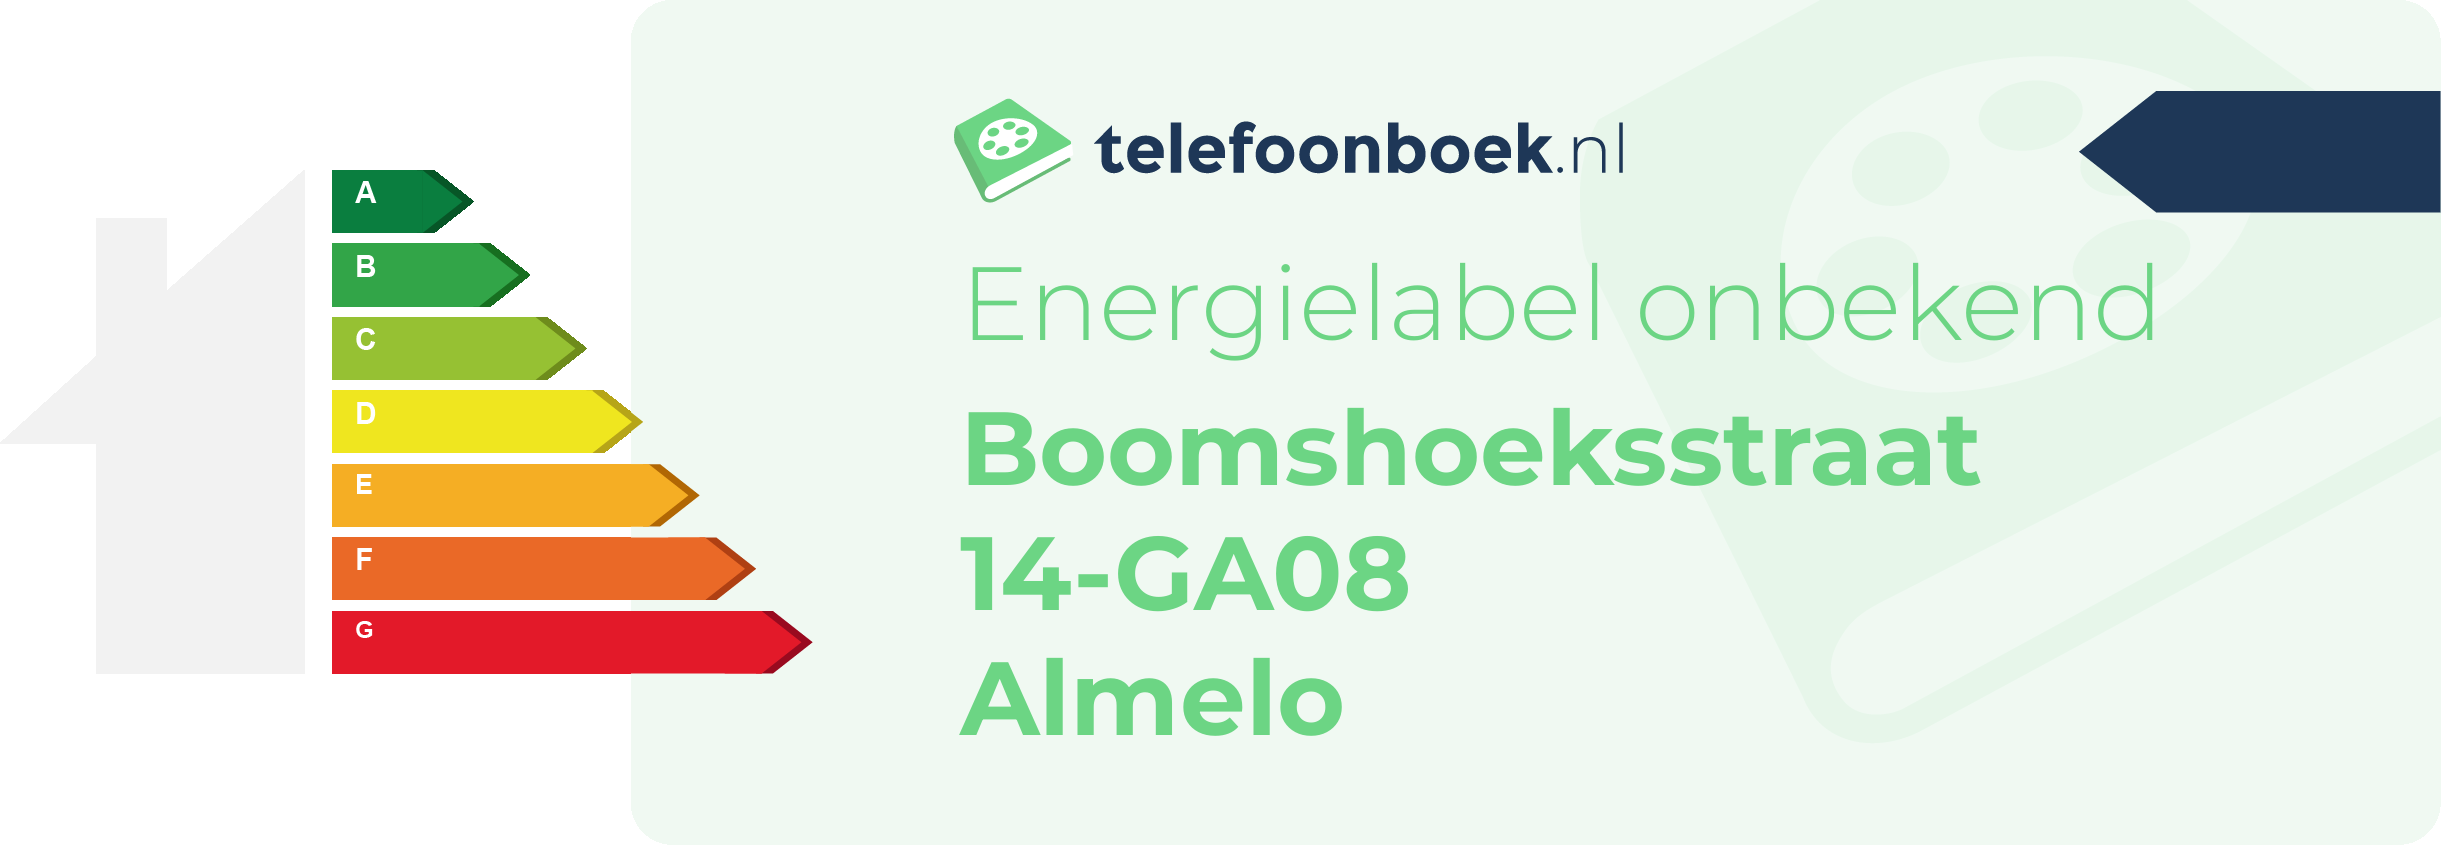 Energielabel Boomshoeksstraat 14-GA08 Almelo